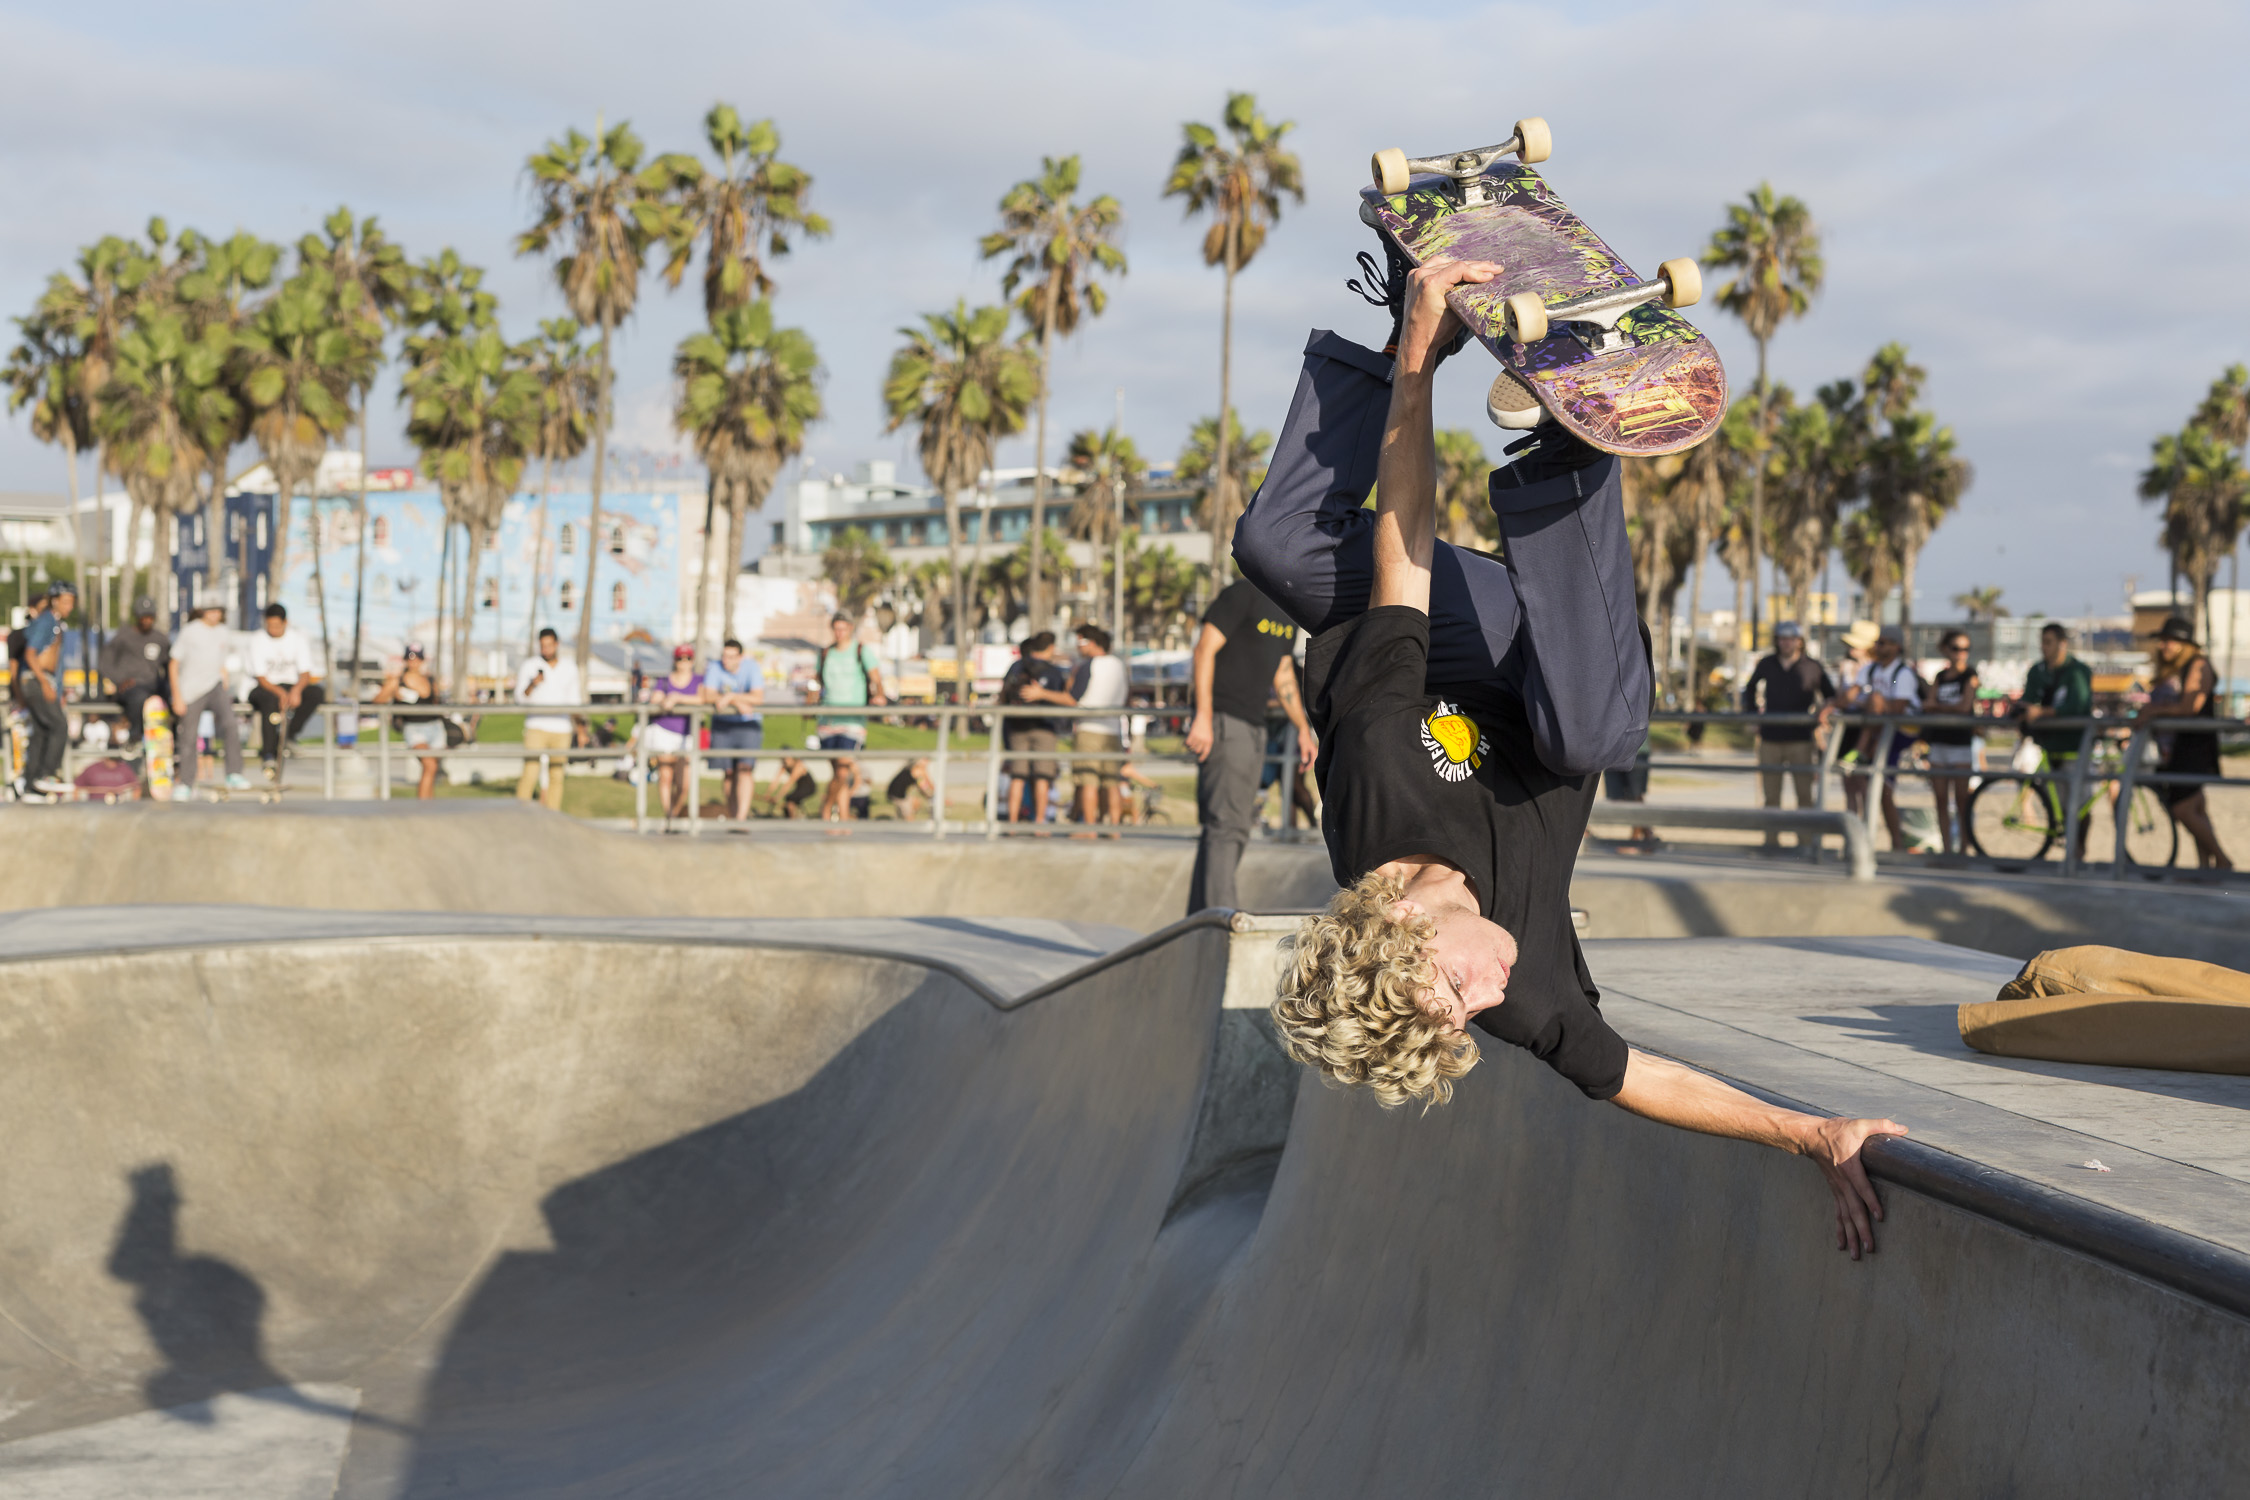 Portfolio(20151018 – Skater Venice Beach Skate Park – 130)